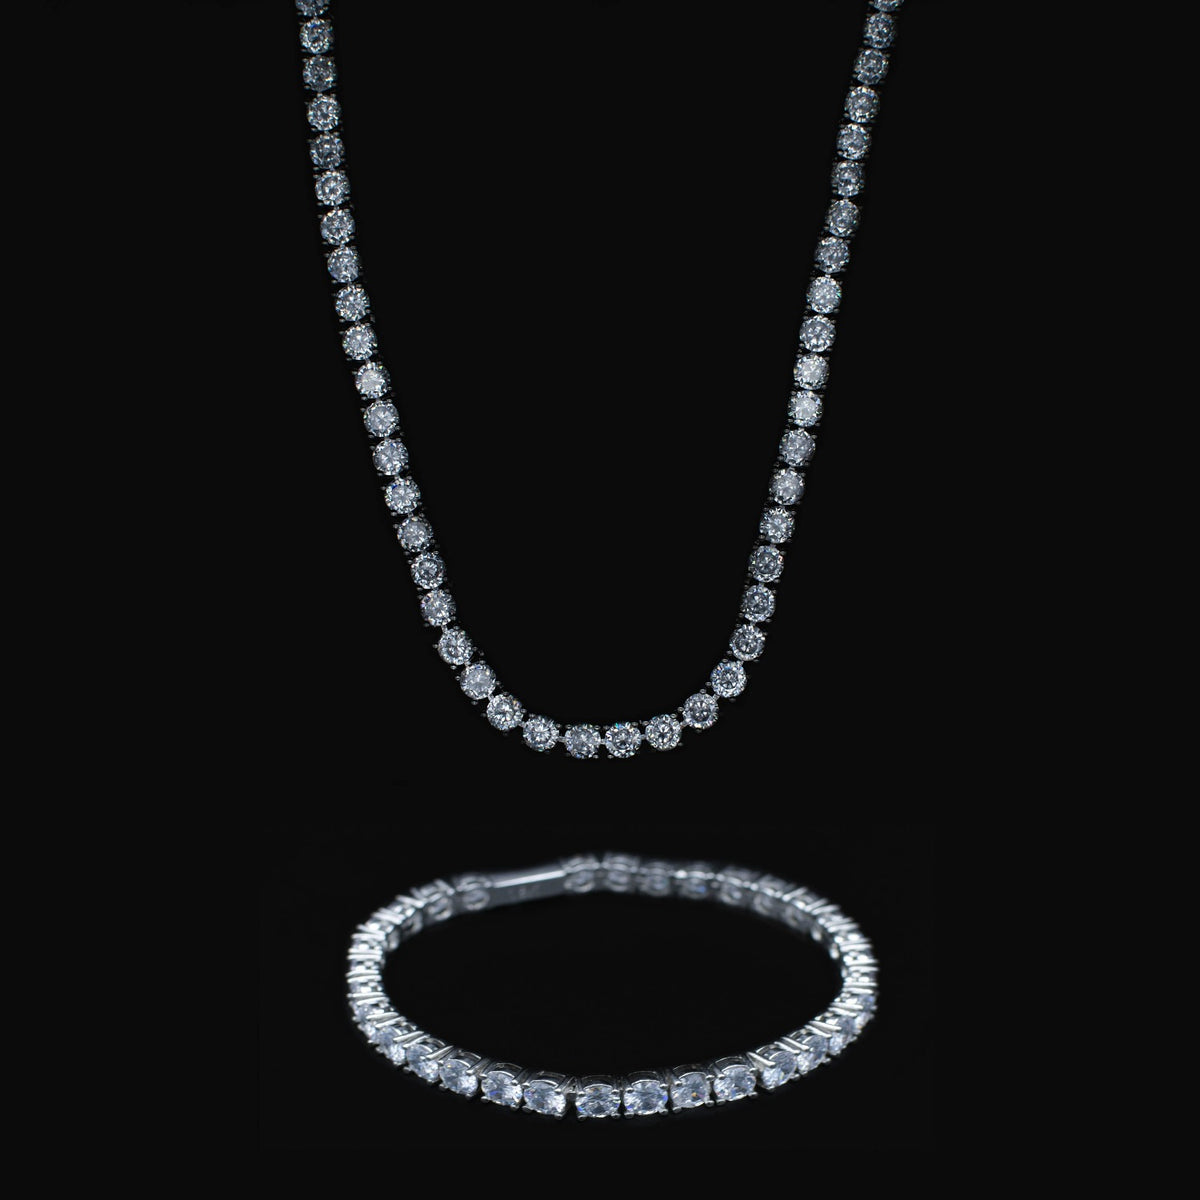 Diamond Tennis Chain + Bracelet Bundle - The Jewelry Plug